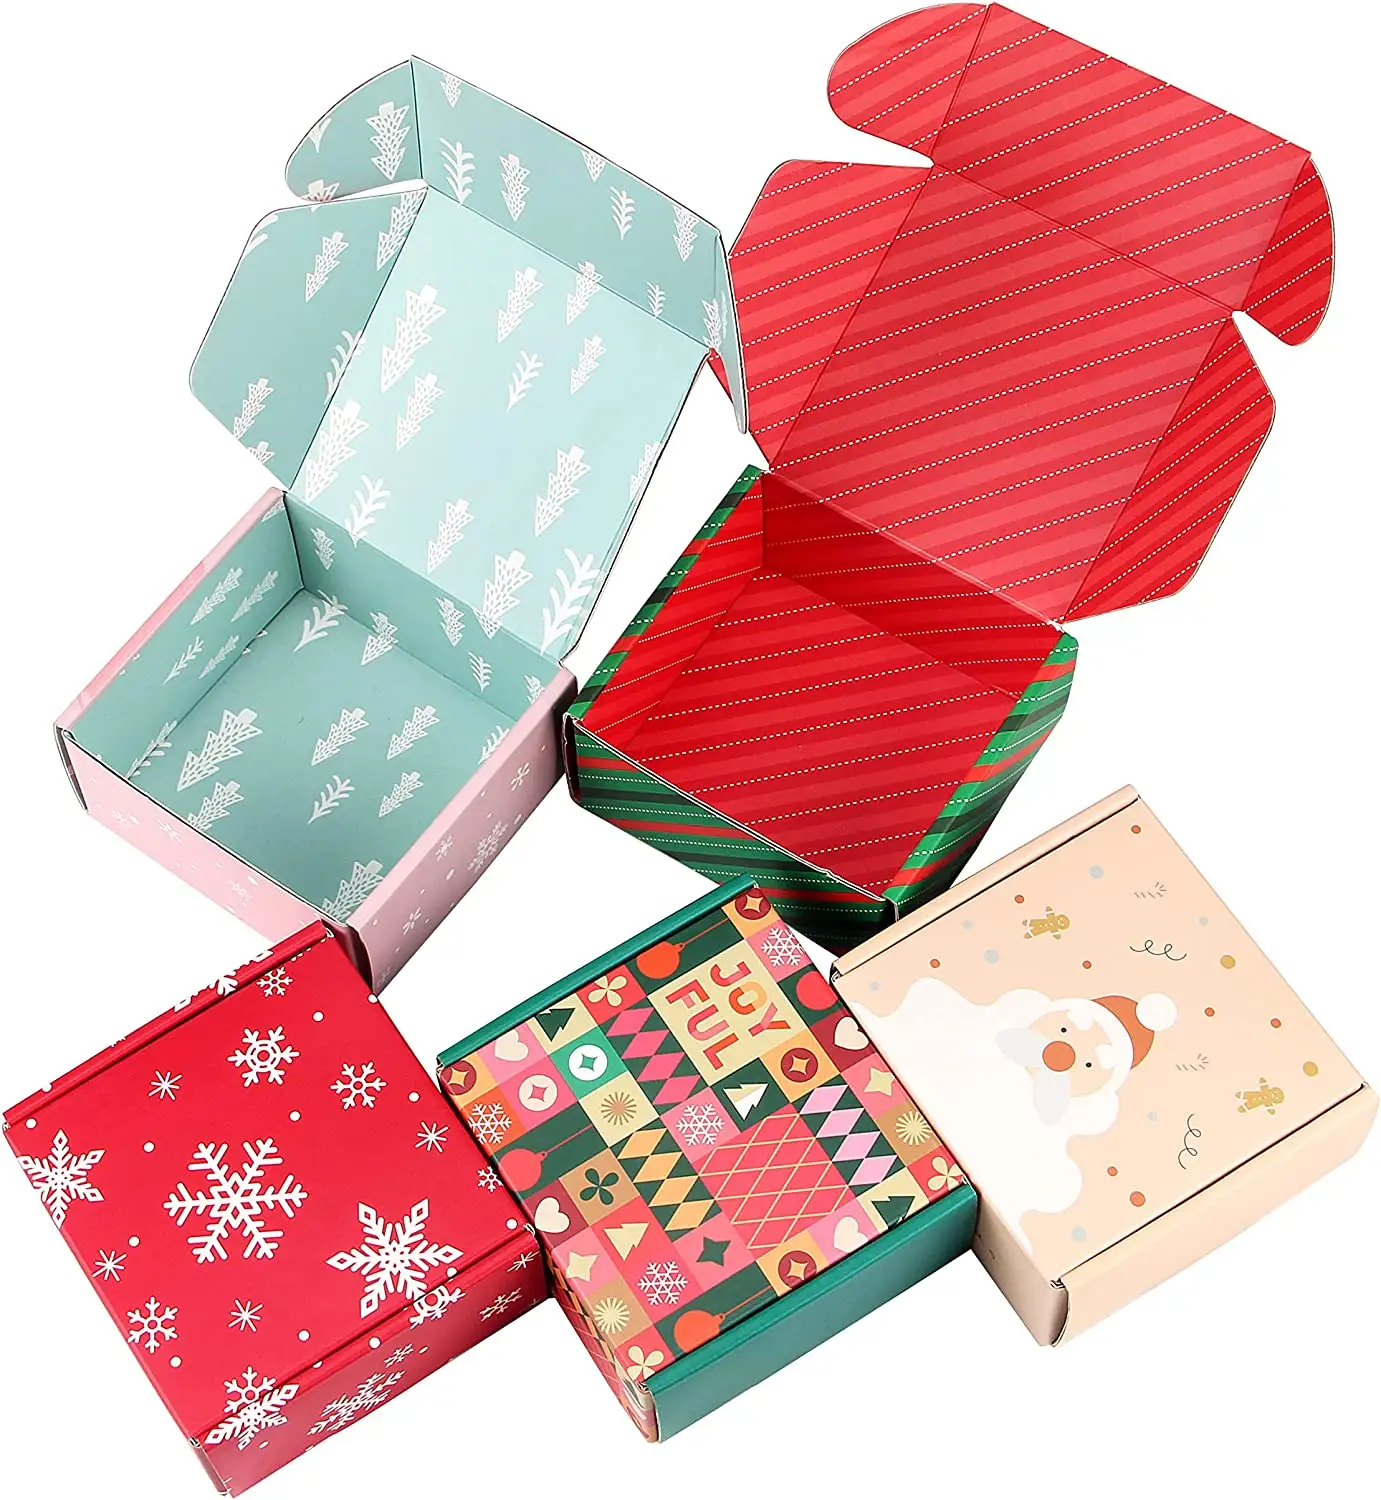 Décoration de boîte-cadeau de Noël en matériaux recyclés biodégradables écologiques personnalisée Boîte de réveillon de Noël Boîte d'emballage cadeau en carton